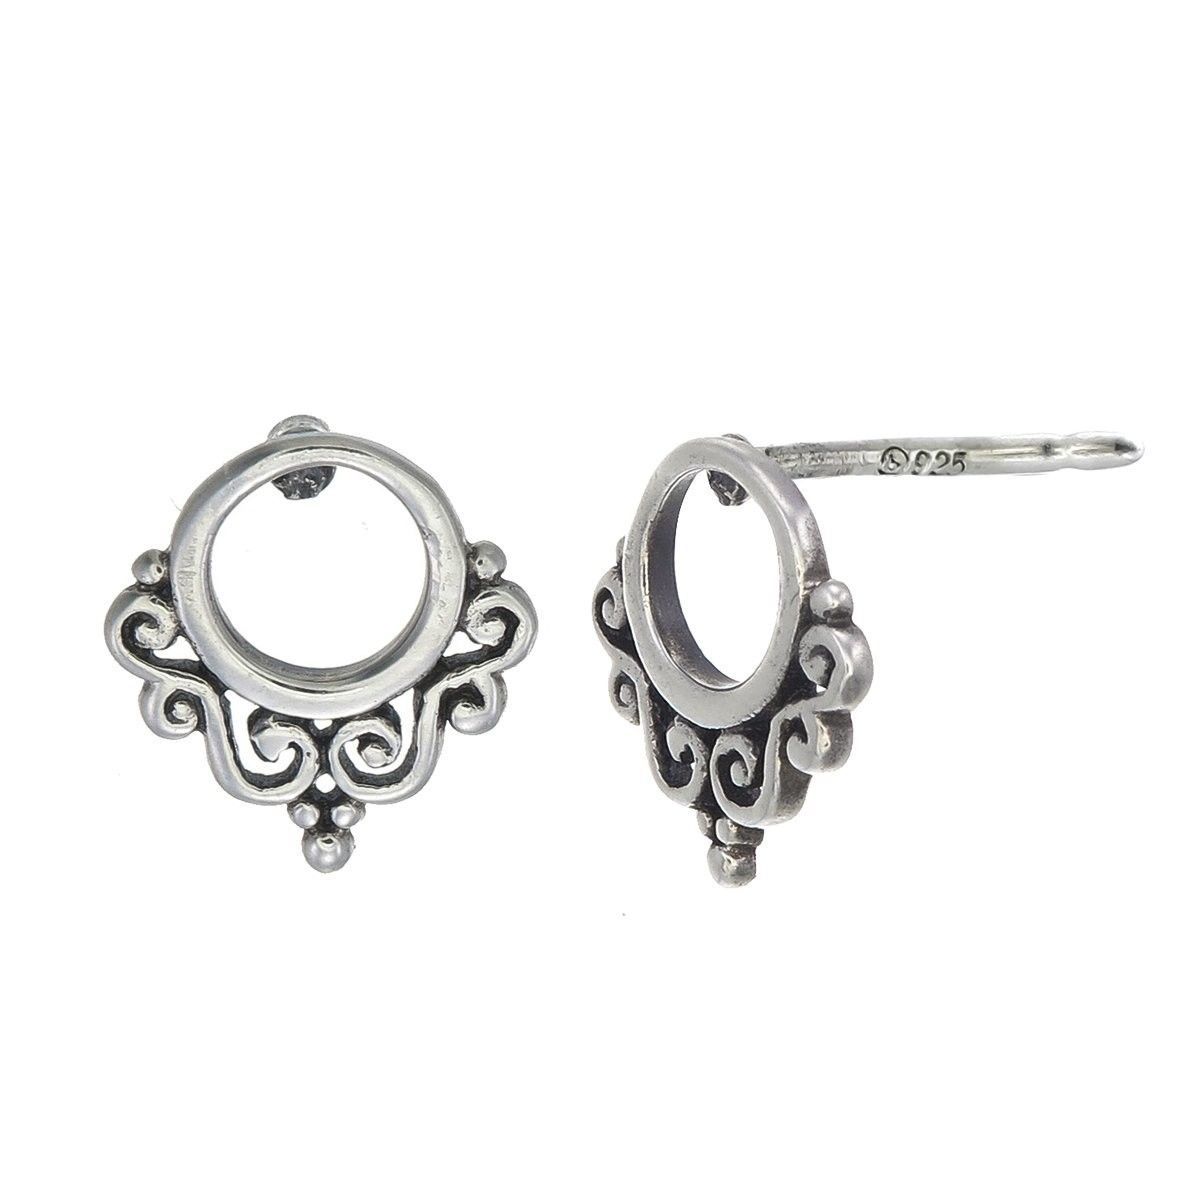 925 Sterling Silver Balinese Filigree Circle Stud Earrings - $37.12